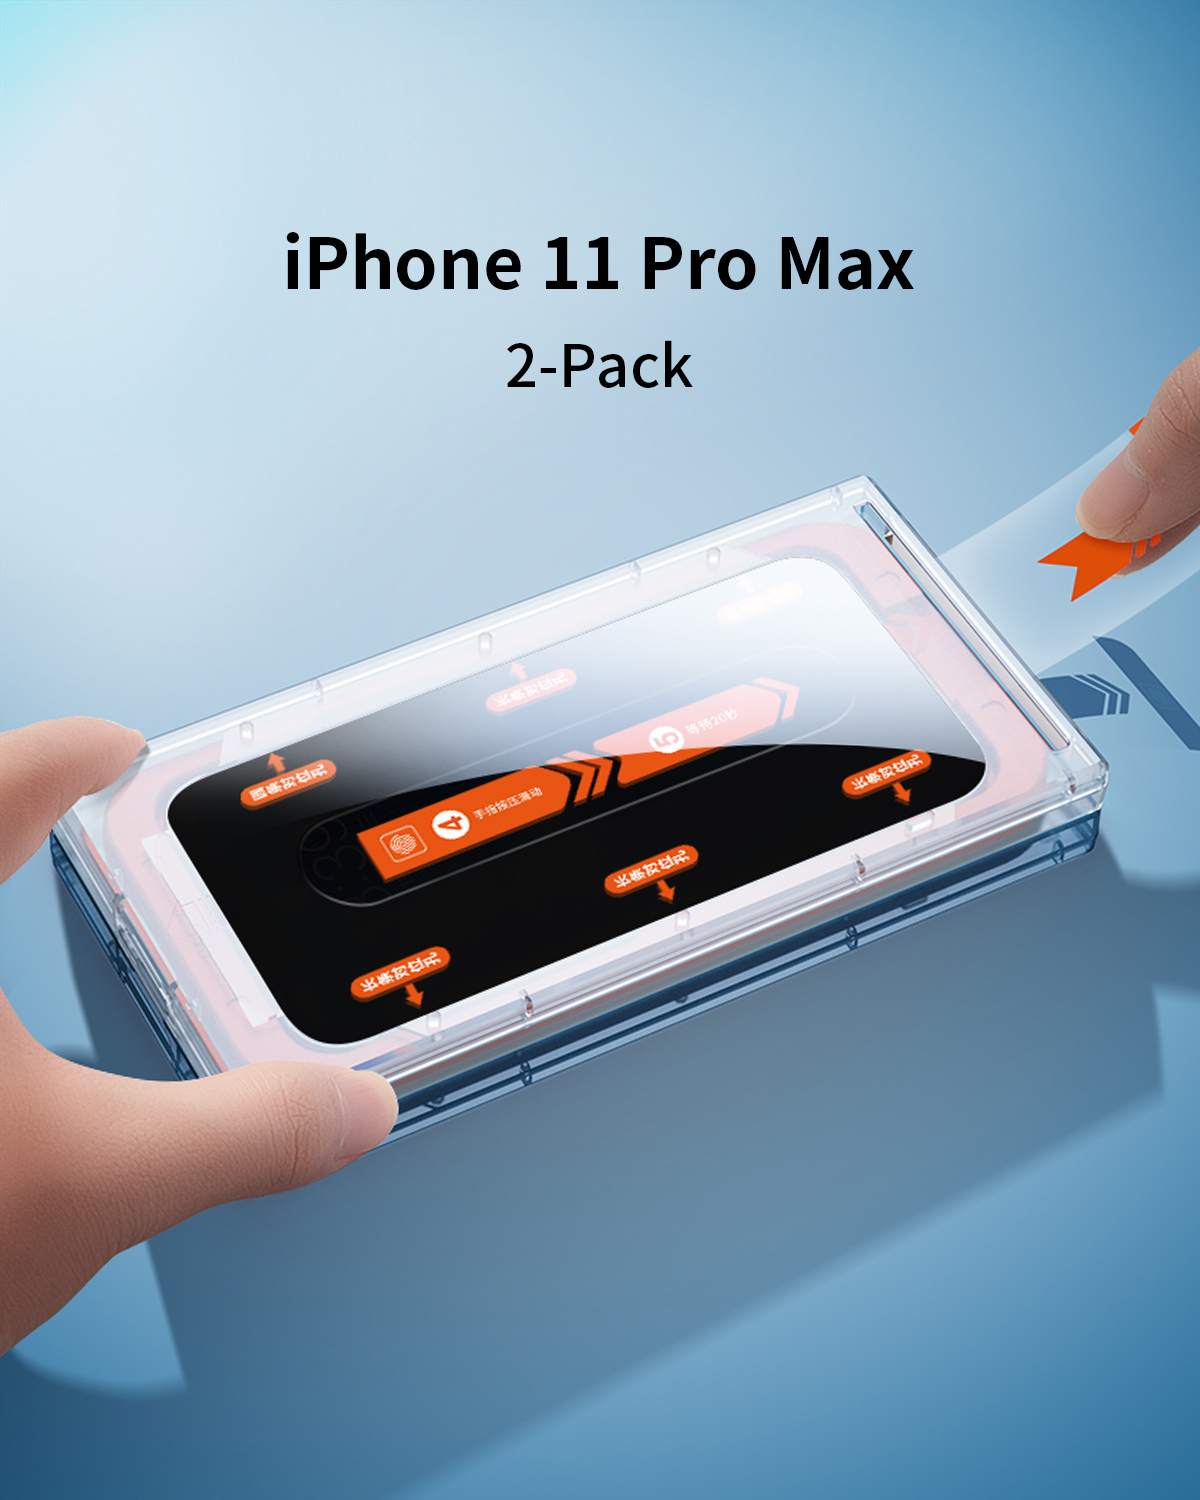 Protection d'écran Verre Trempé iPhone 11 Pro Max - DIAMOND GLASS HD3